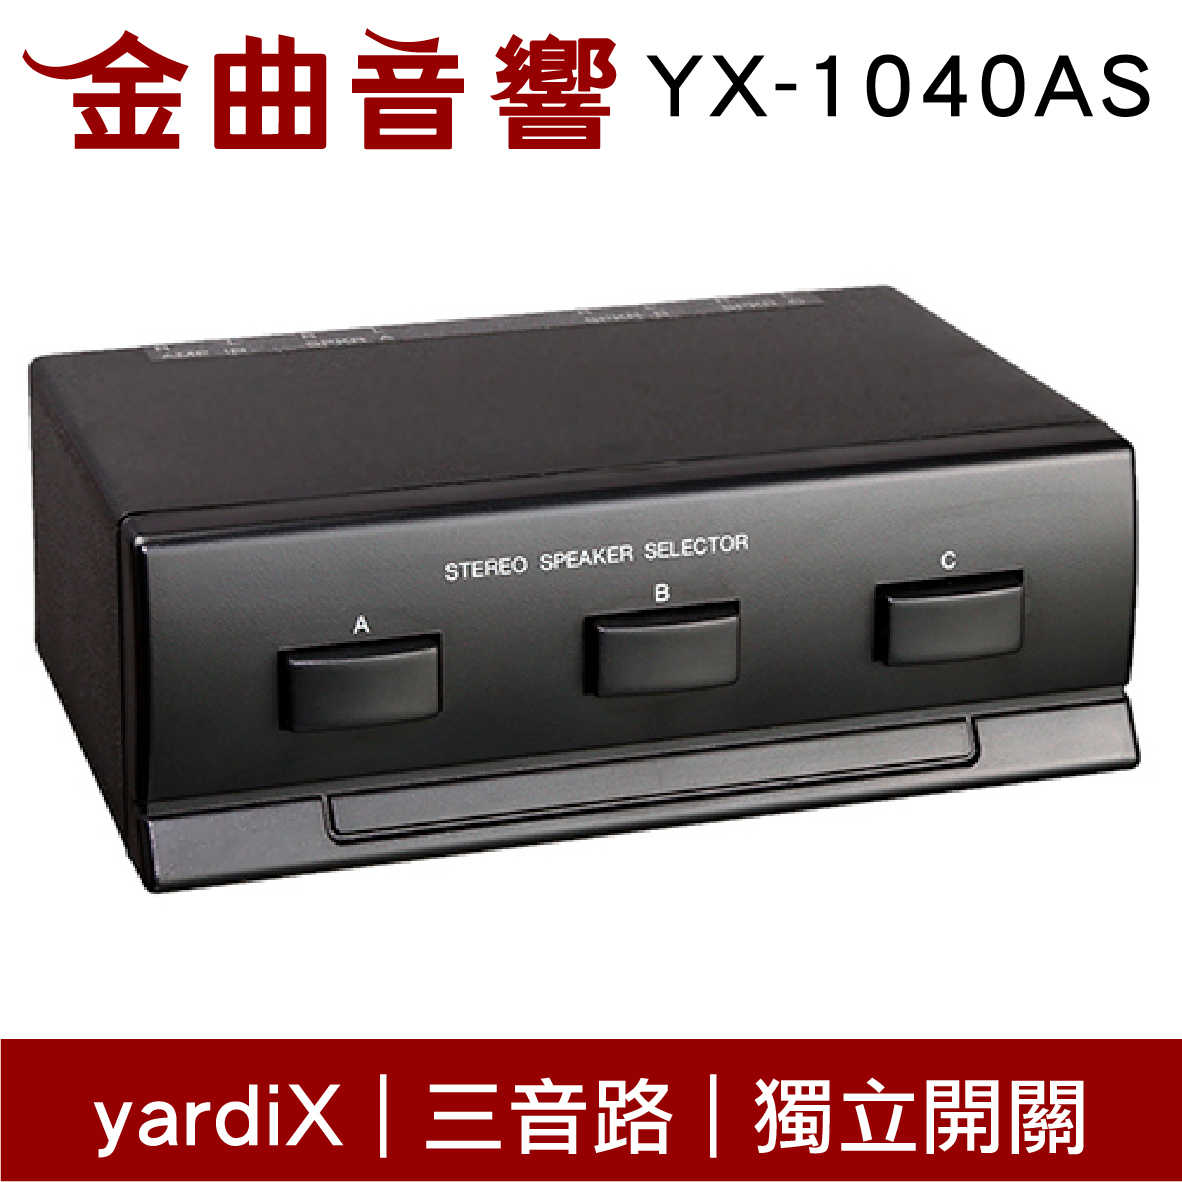 yardiX YX-1040AS 三音路 獨立開關 喇叭切換器 台灣製造 | 金曲音響